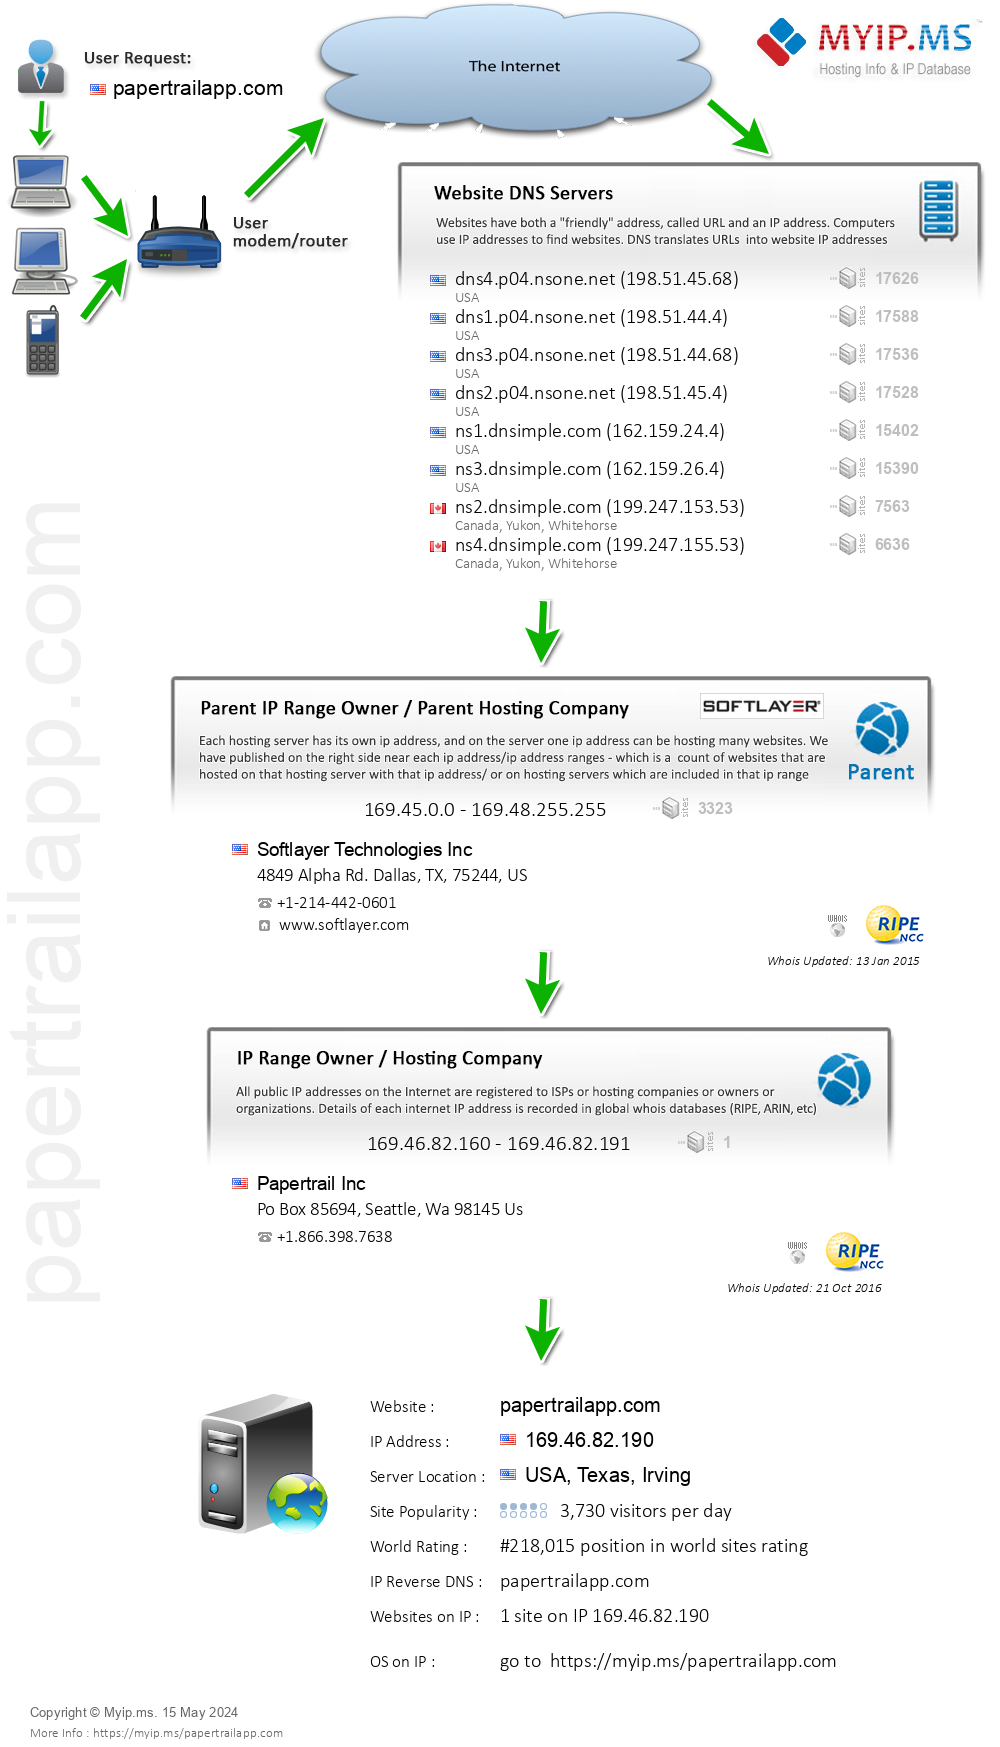 Papertrailapp.com - Website Hosting Visual IP Diagram